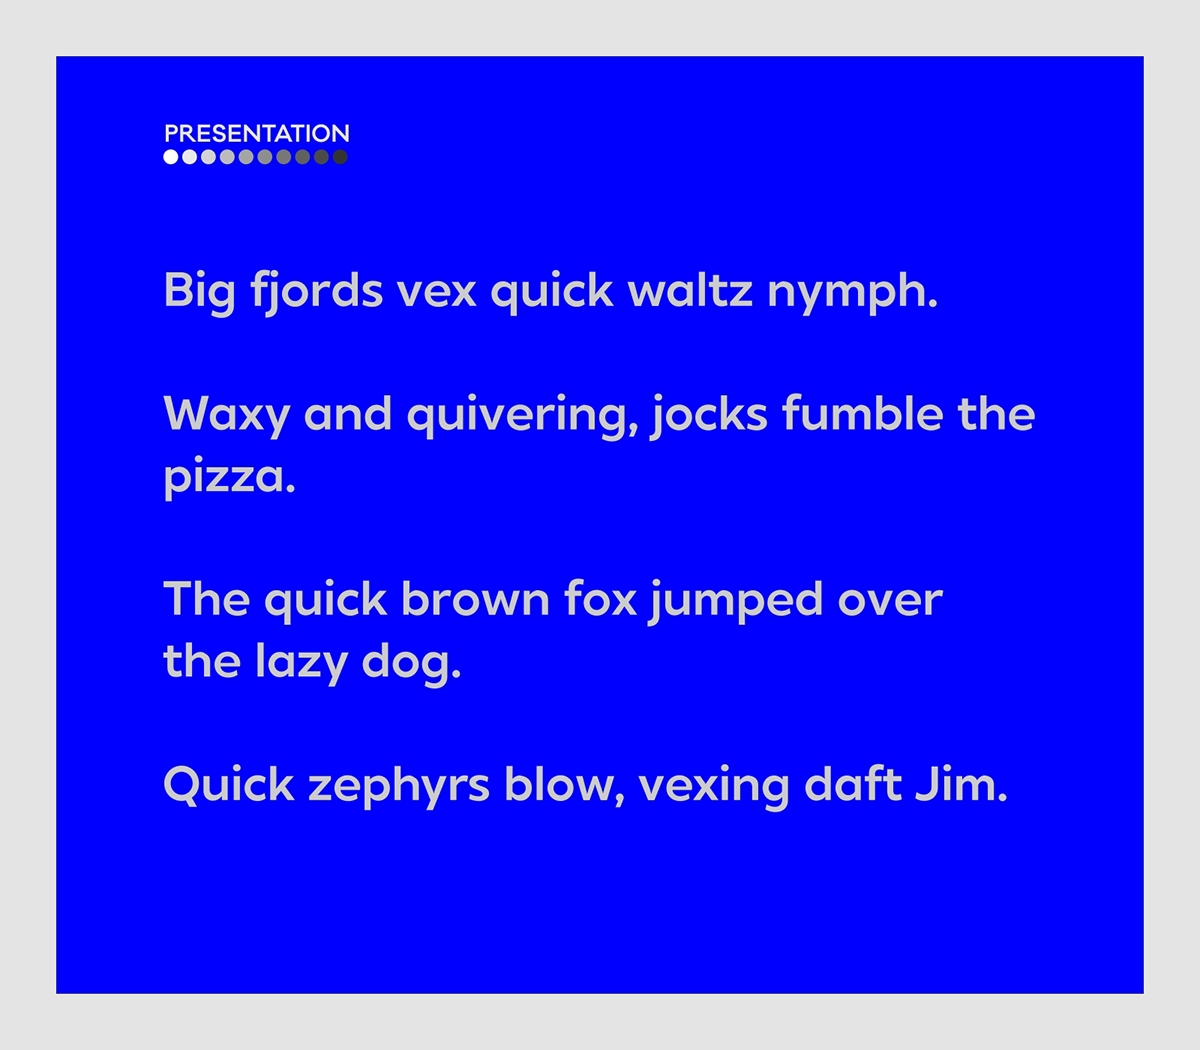 font fonts Typeface type family typefaces sans serif